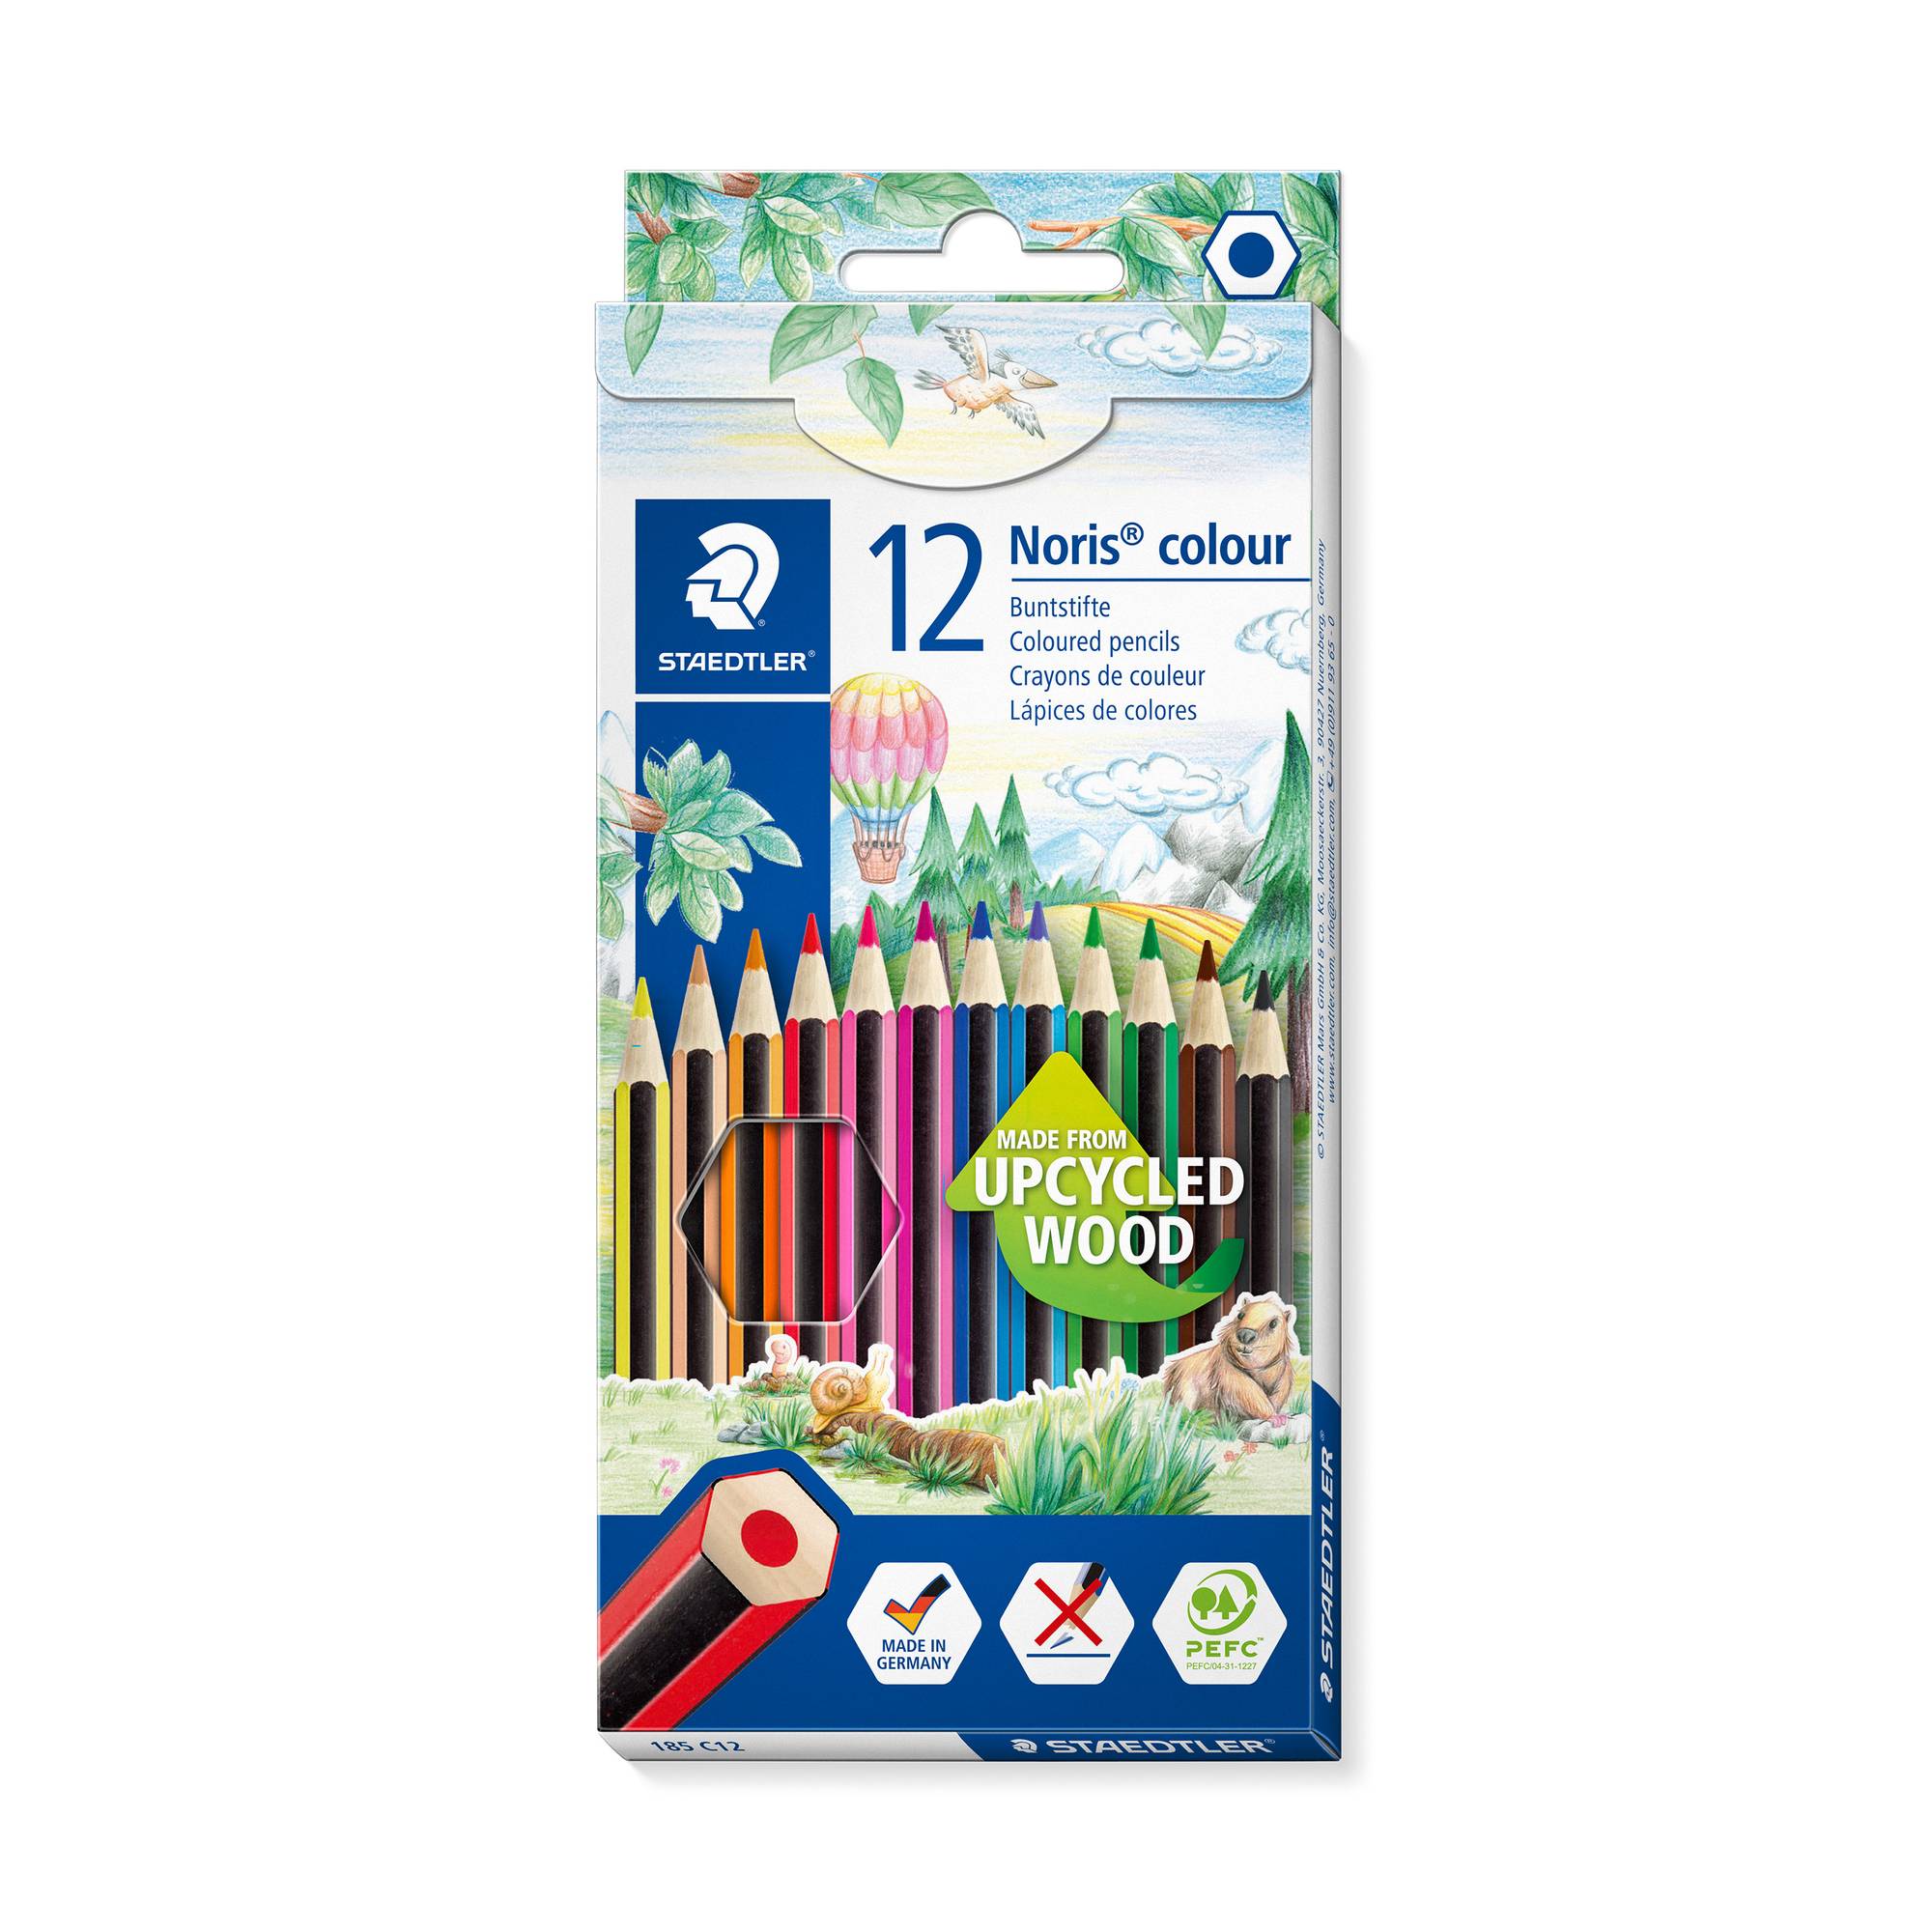 Nouveau Excellent Noris couleur Crayons Pack de 12